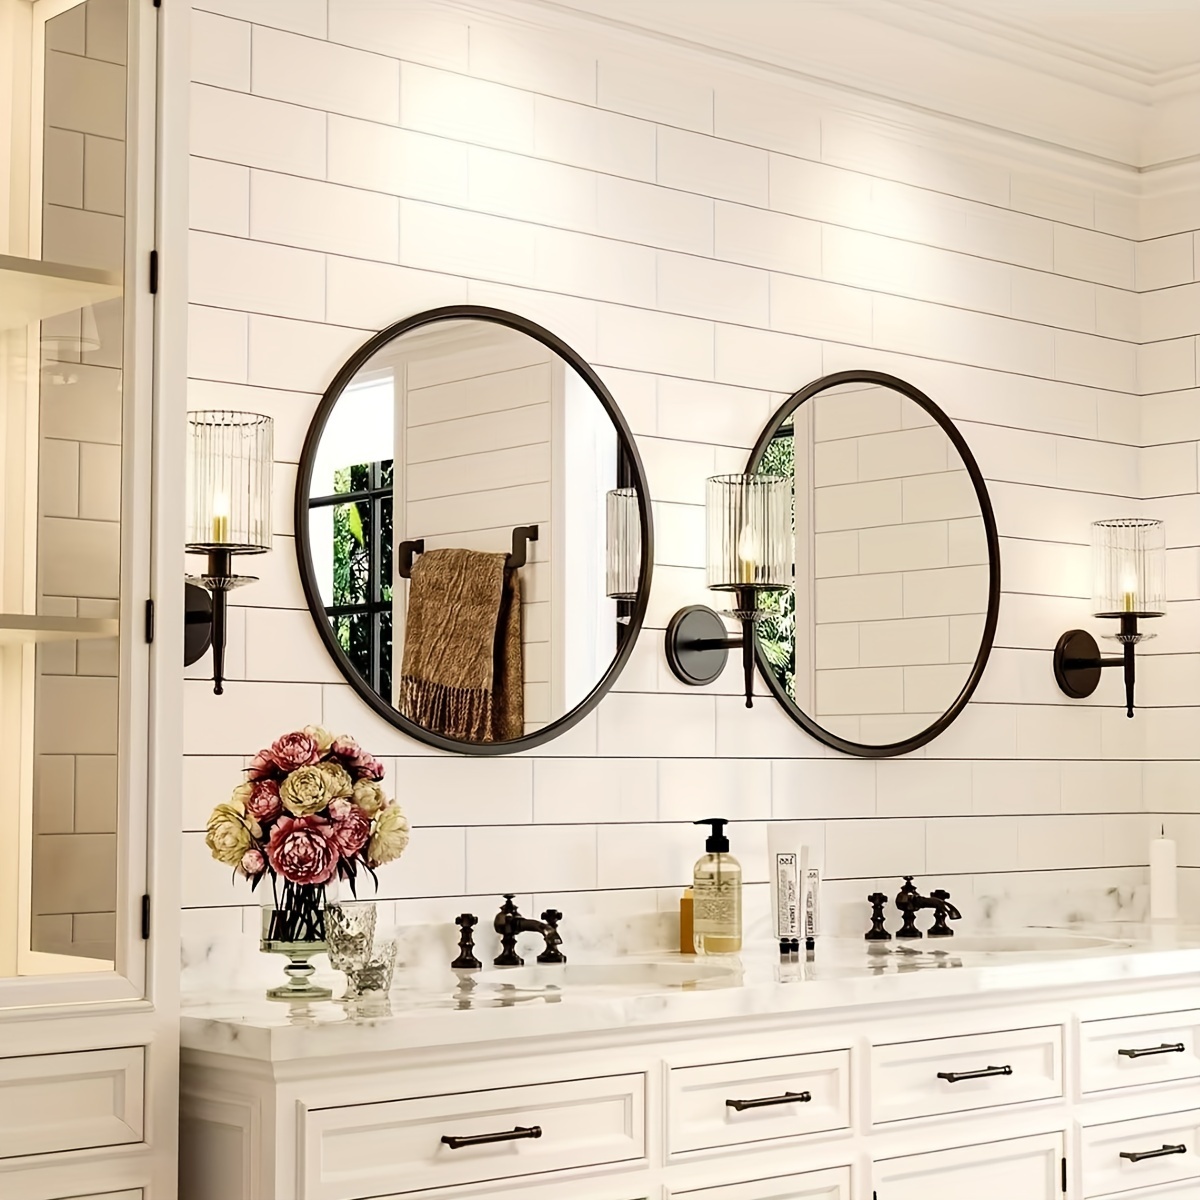 Espejo redondo grande de 39 pulgadas, espejo de baño con marco de metal  negro, espejo de tocador moderno, espejo circular para baño, sala de estar